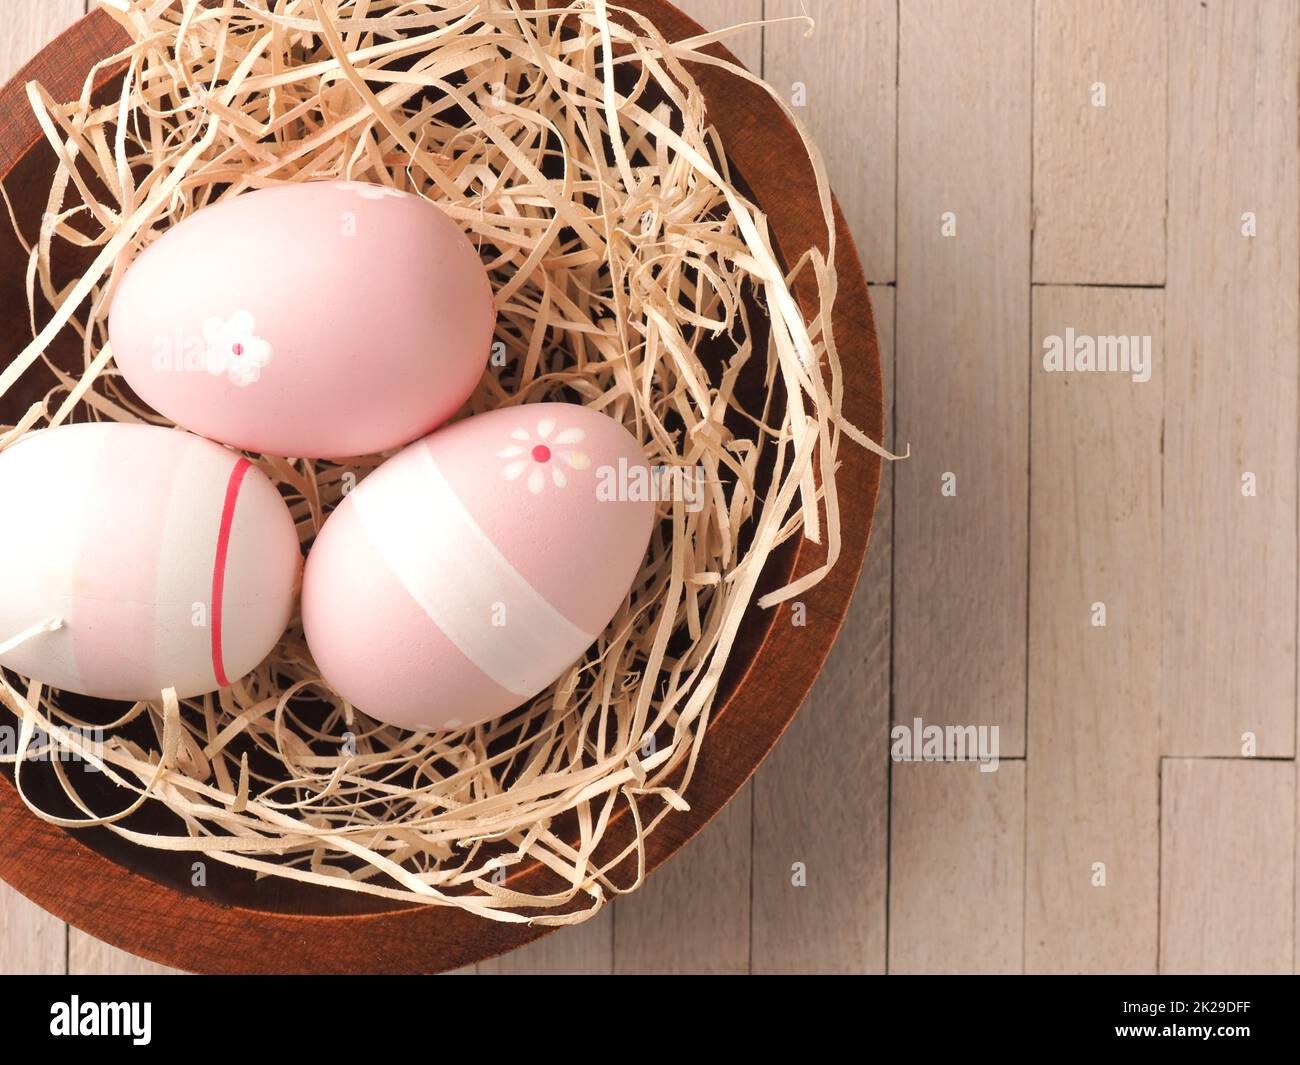 Trois œufs de Pâques roses dans un nid Banque D'Images